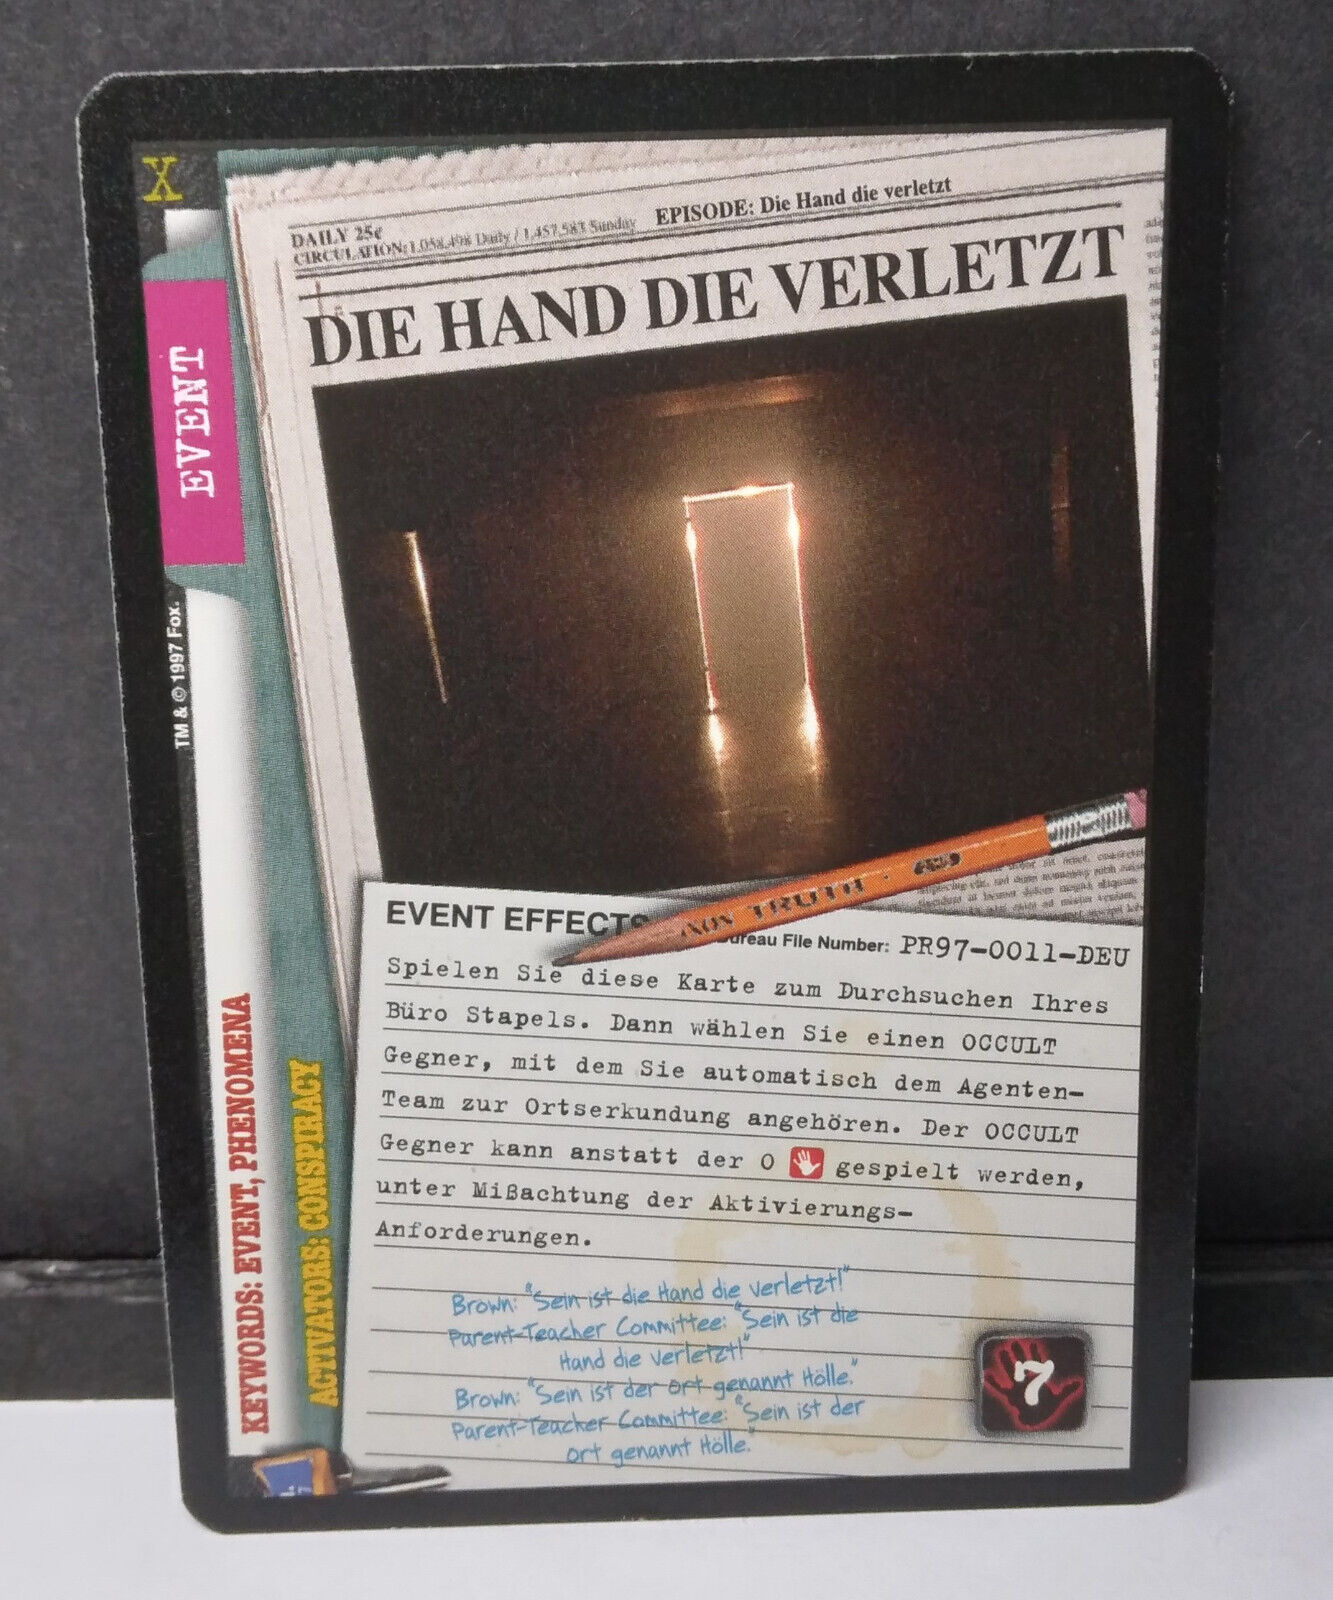 The X-Files Die hand Die Verletzt Promo card PR97-0011-DEU